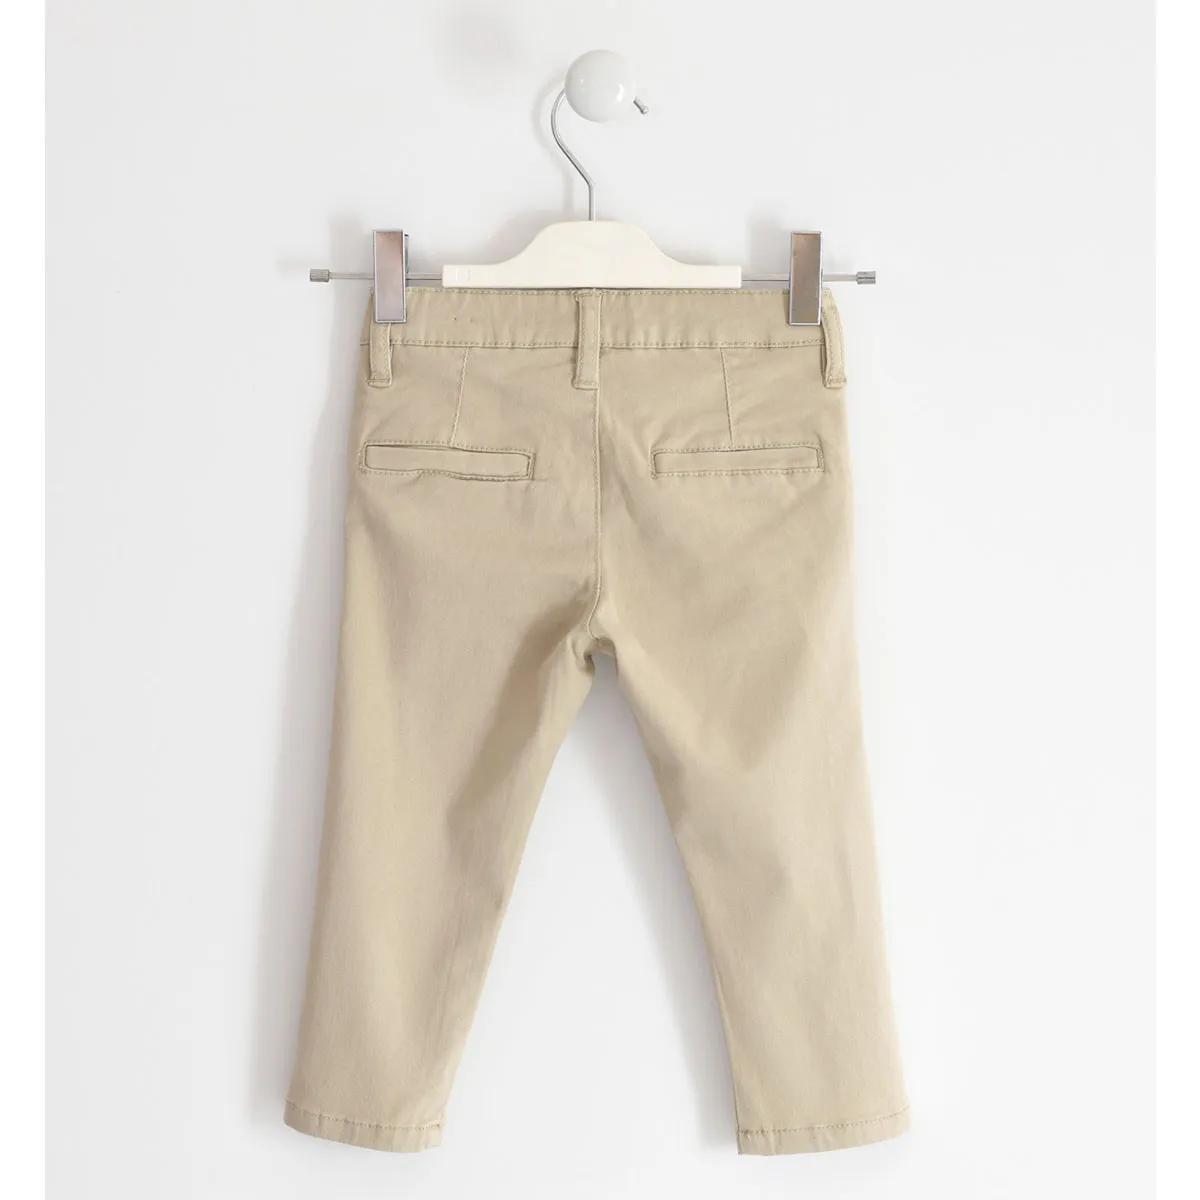 IDO pantalone, 86-116